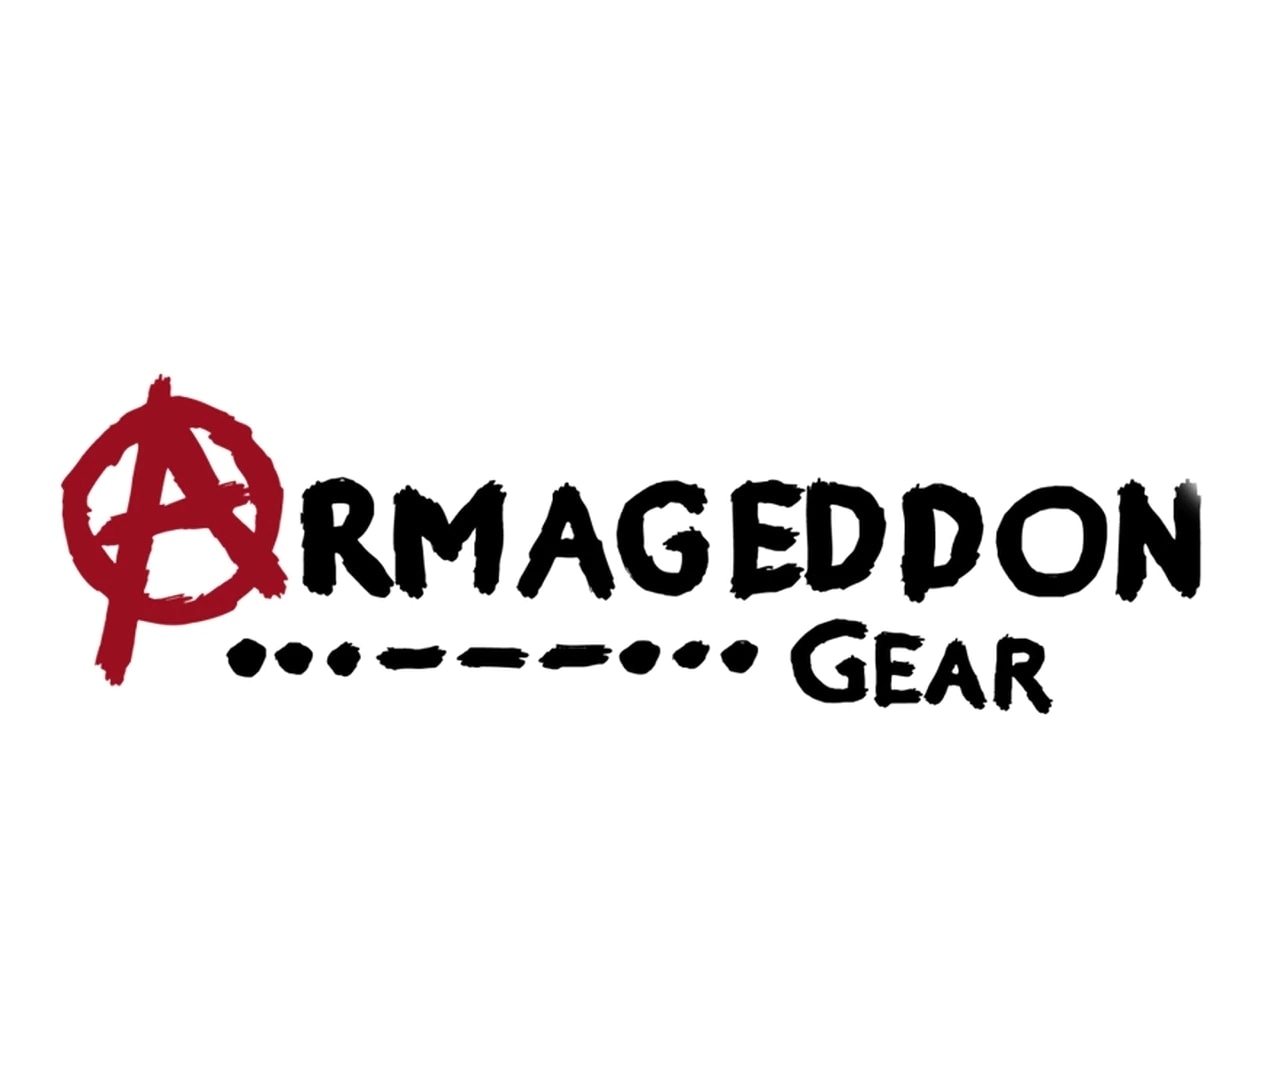 armageddongear.com